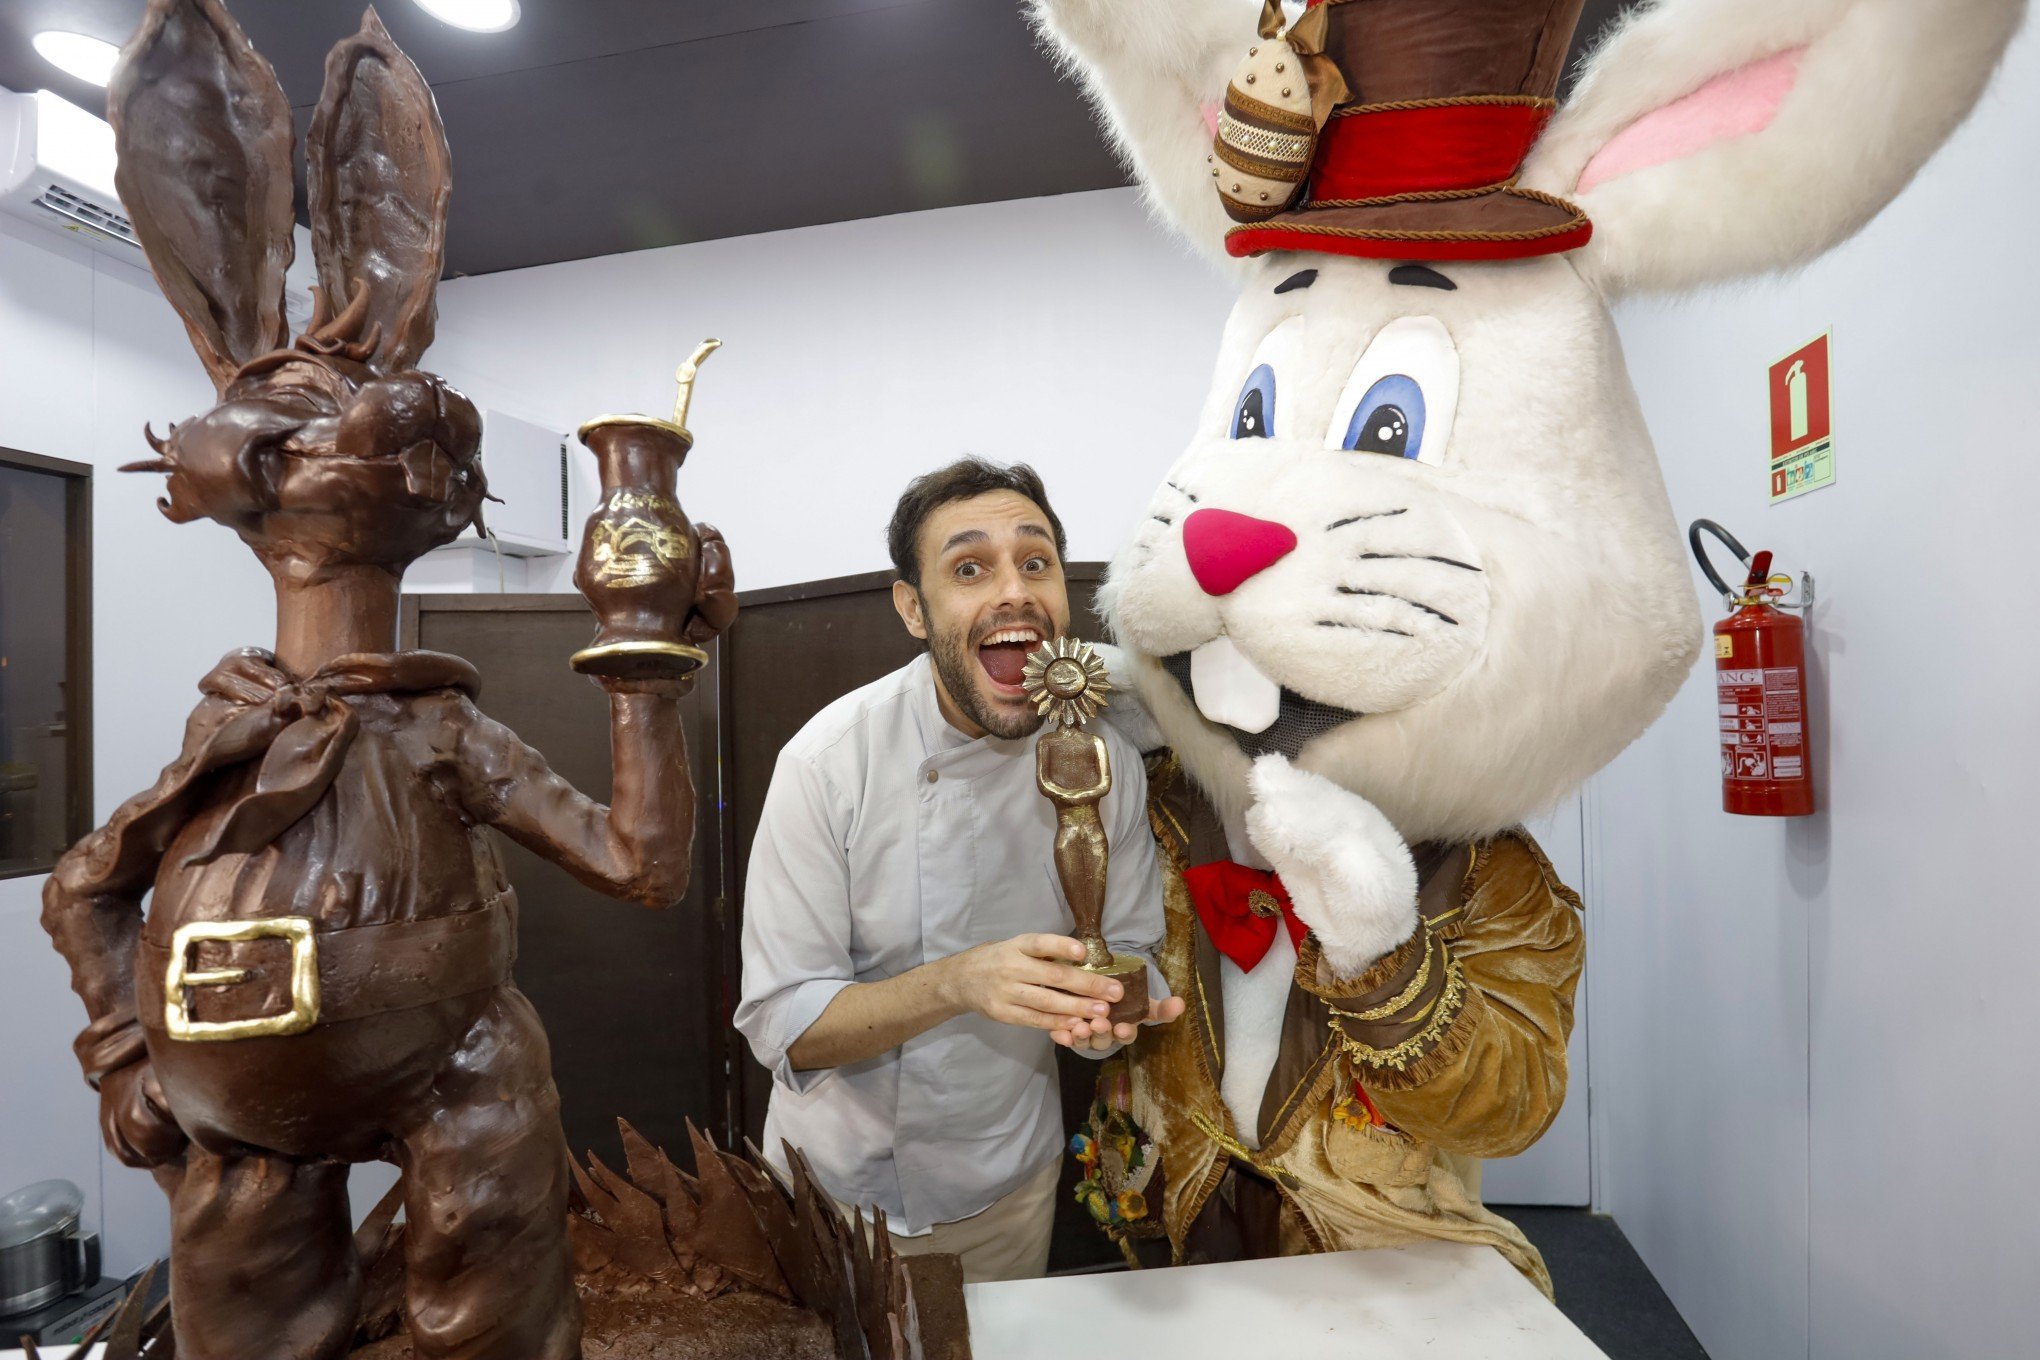 PÁSCOA: Veja como ficou o Coelho que foi produzido com 120 quilos de chocolate